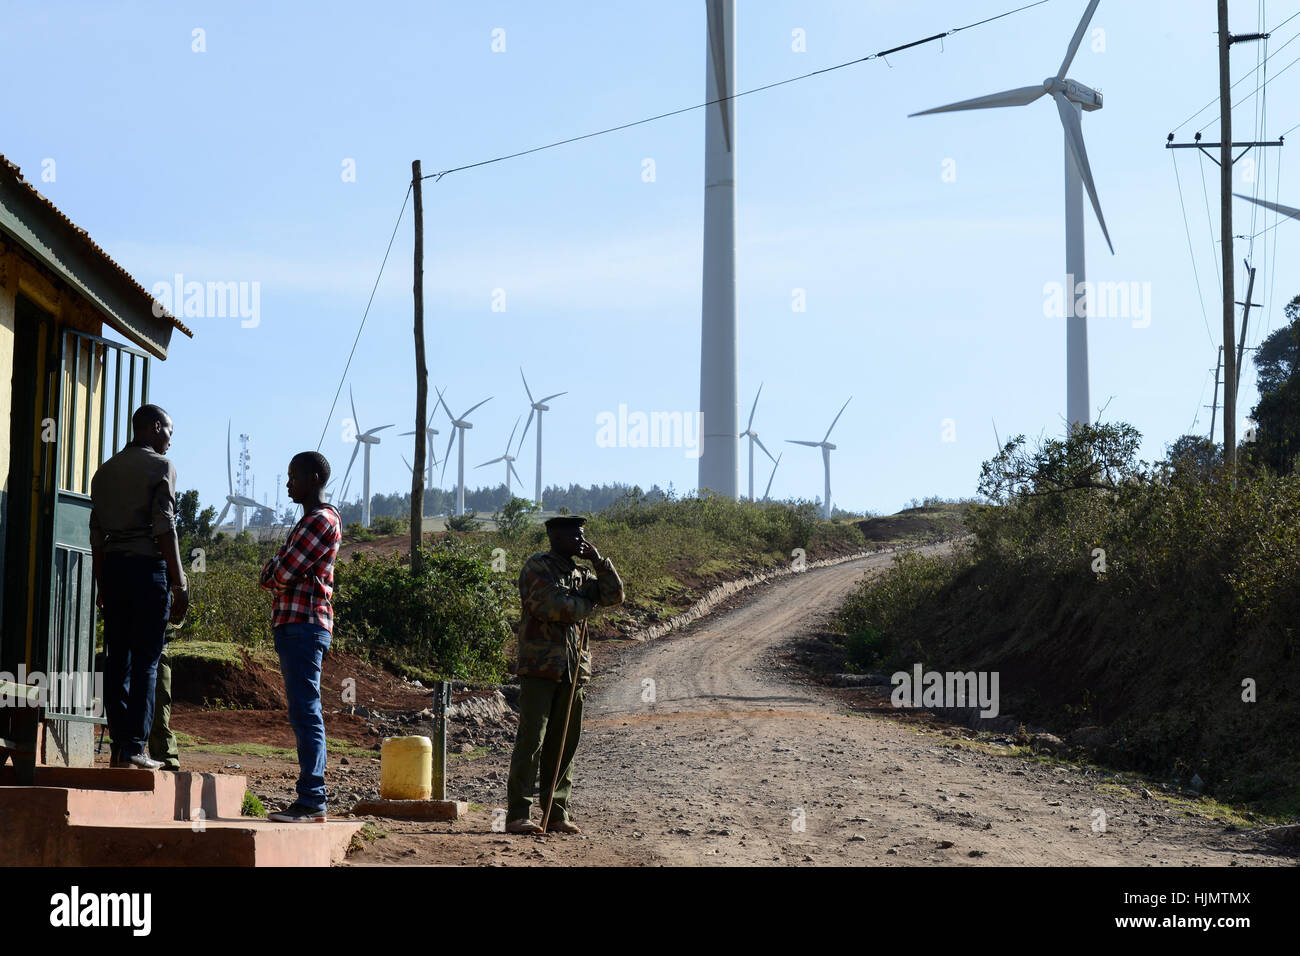 Ngong Hills, Kenia, Nairobi, 25,5 MW Wind Power Station mit Vestas und Gamesa Windenergieanlagen, im Besitz und betrieben von KENGEN Kenia Strom Generating Company, am Eingangstor bewachen / KENIA, Ngong Hills Windpark, Betreiber KenGen Kenia Strom Generating Company Mit Vestas Und Gamesa Windkraftanlagen Stockfoto